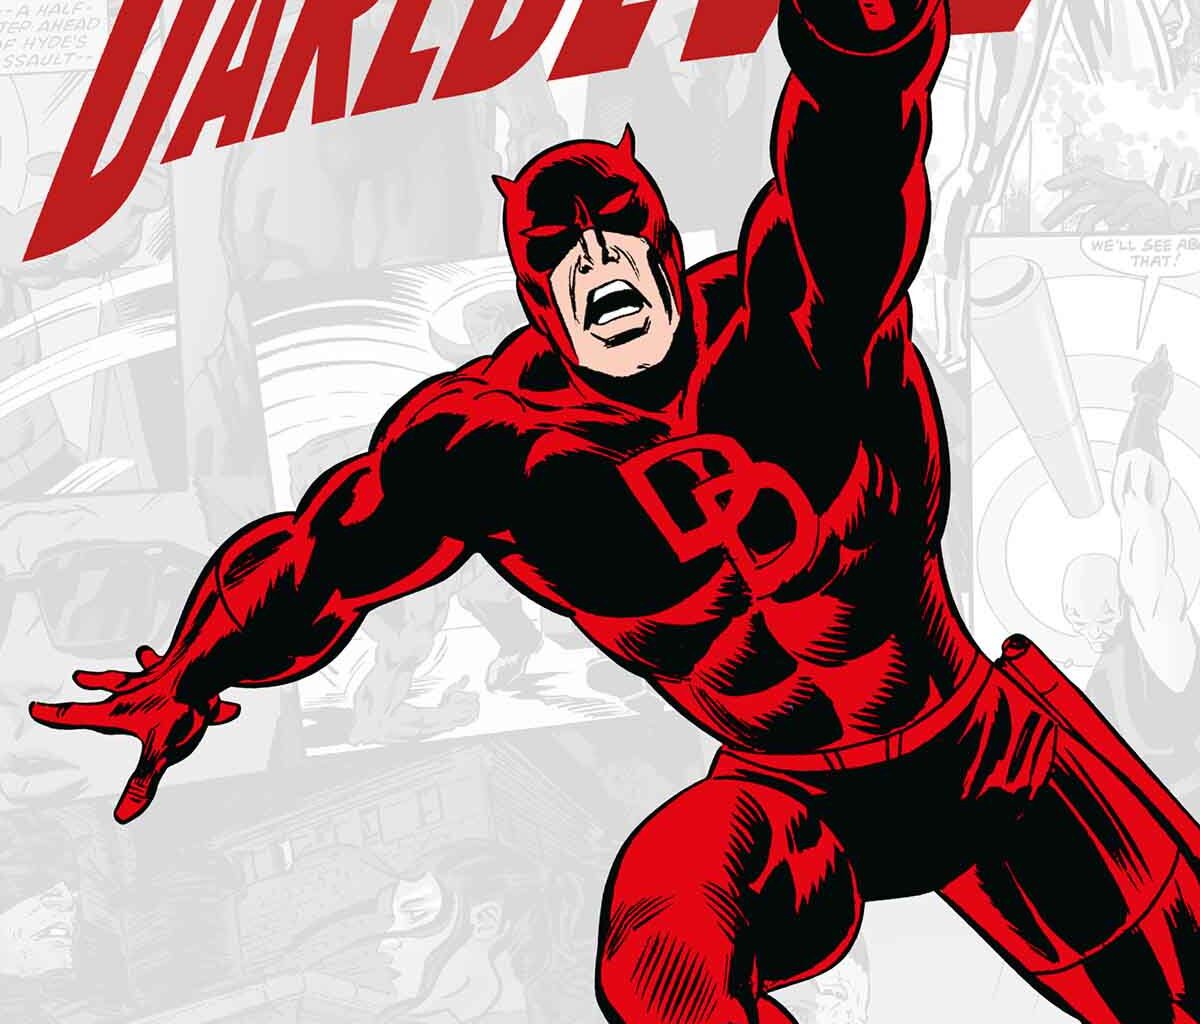 Cover des Comics Daredevil von Panini Comics.